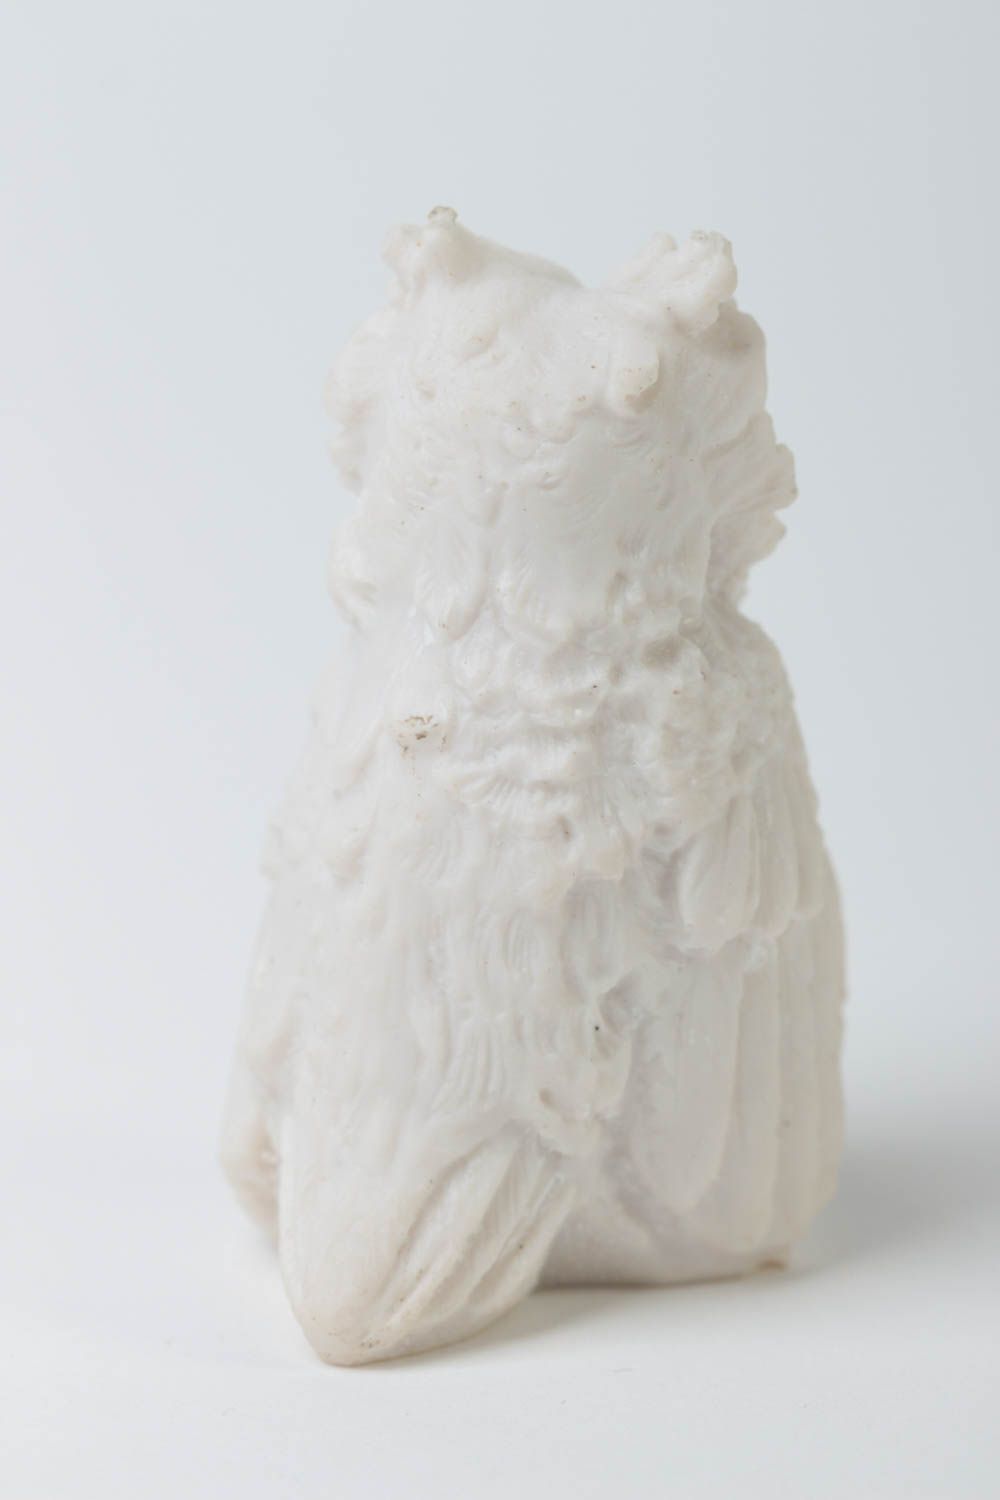 Handmade statuette designer statuette home decor unusual gift owl figurine photo 4